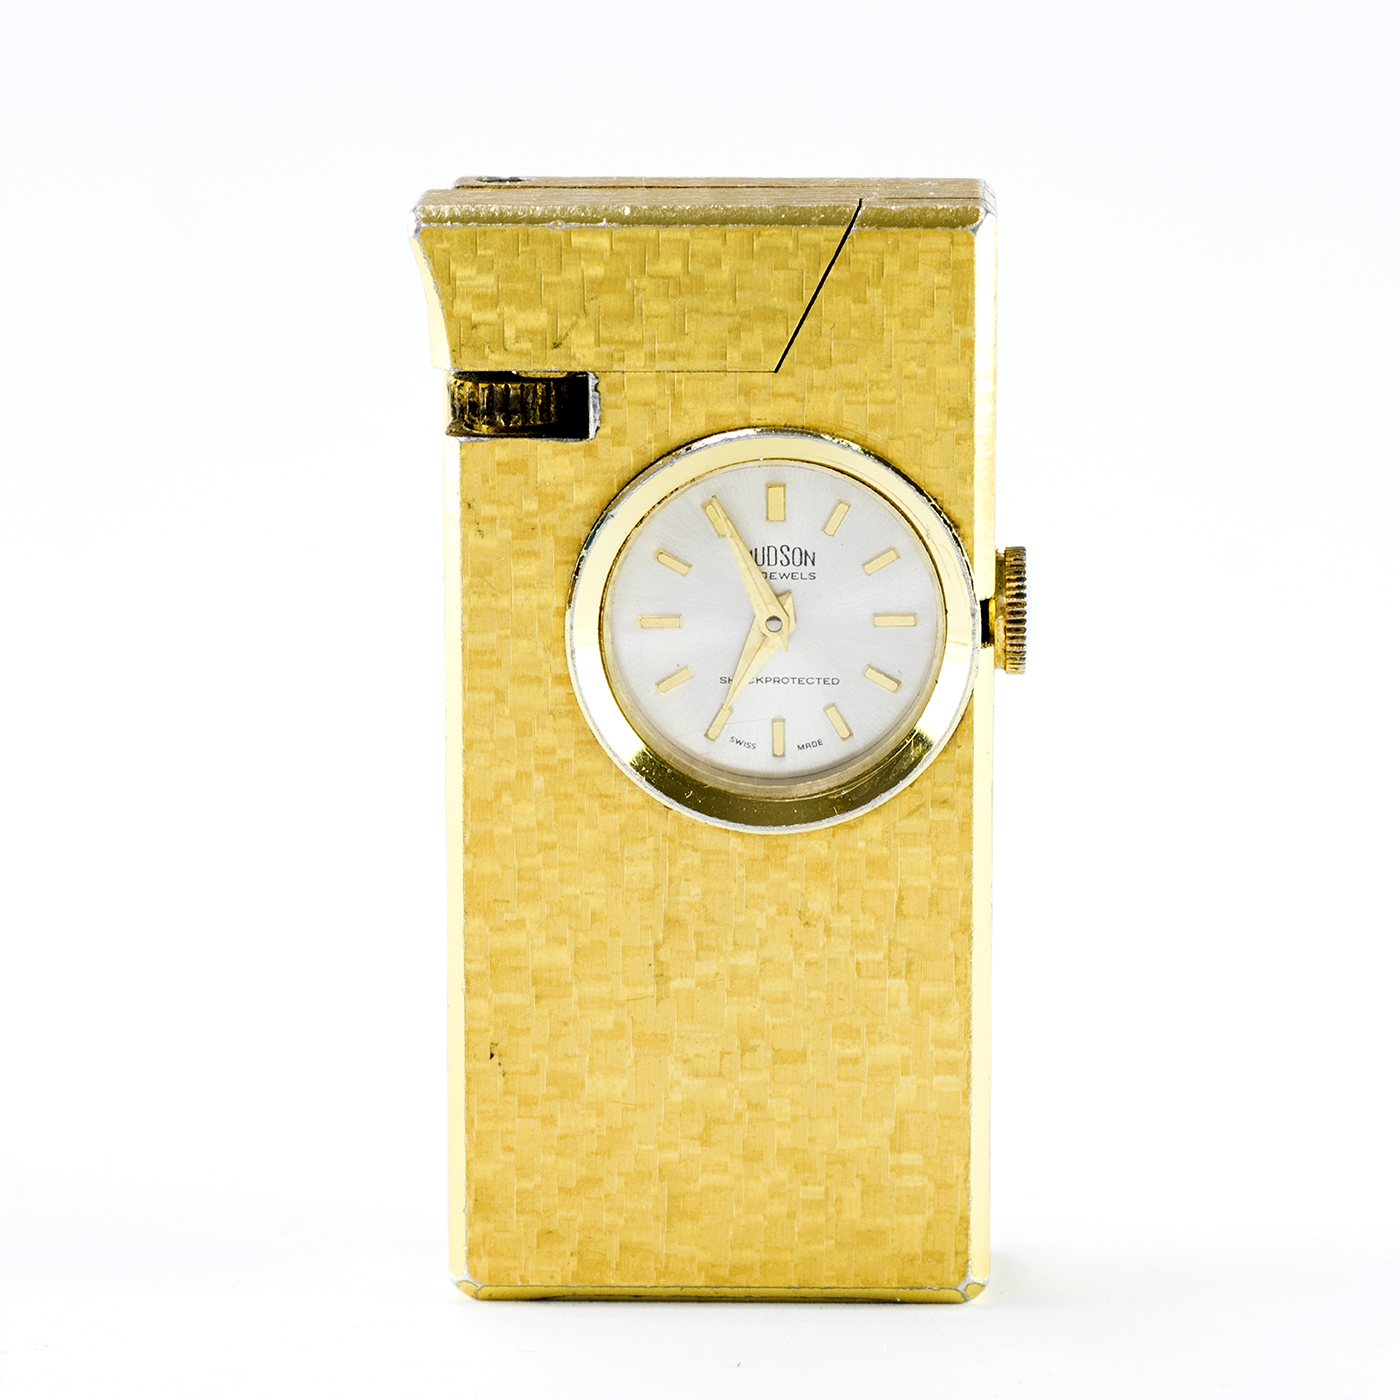 HUDSON (Suiza). Encendedor FOSKA con reloj lepine y remontoir integrado. Suiza, ca.1900.